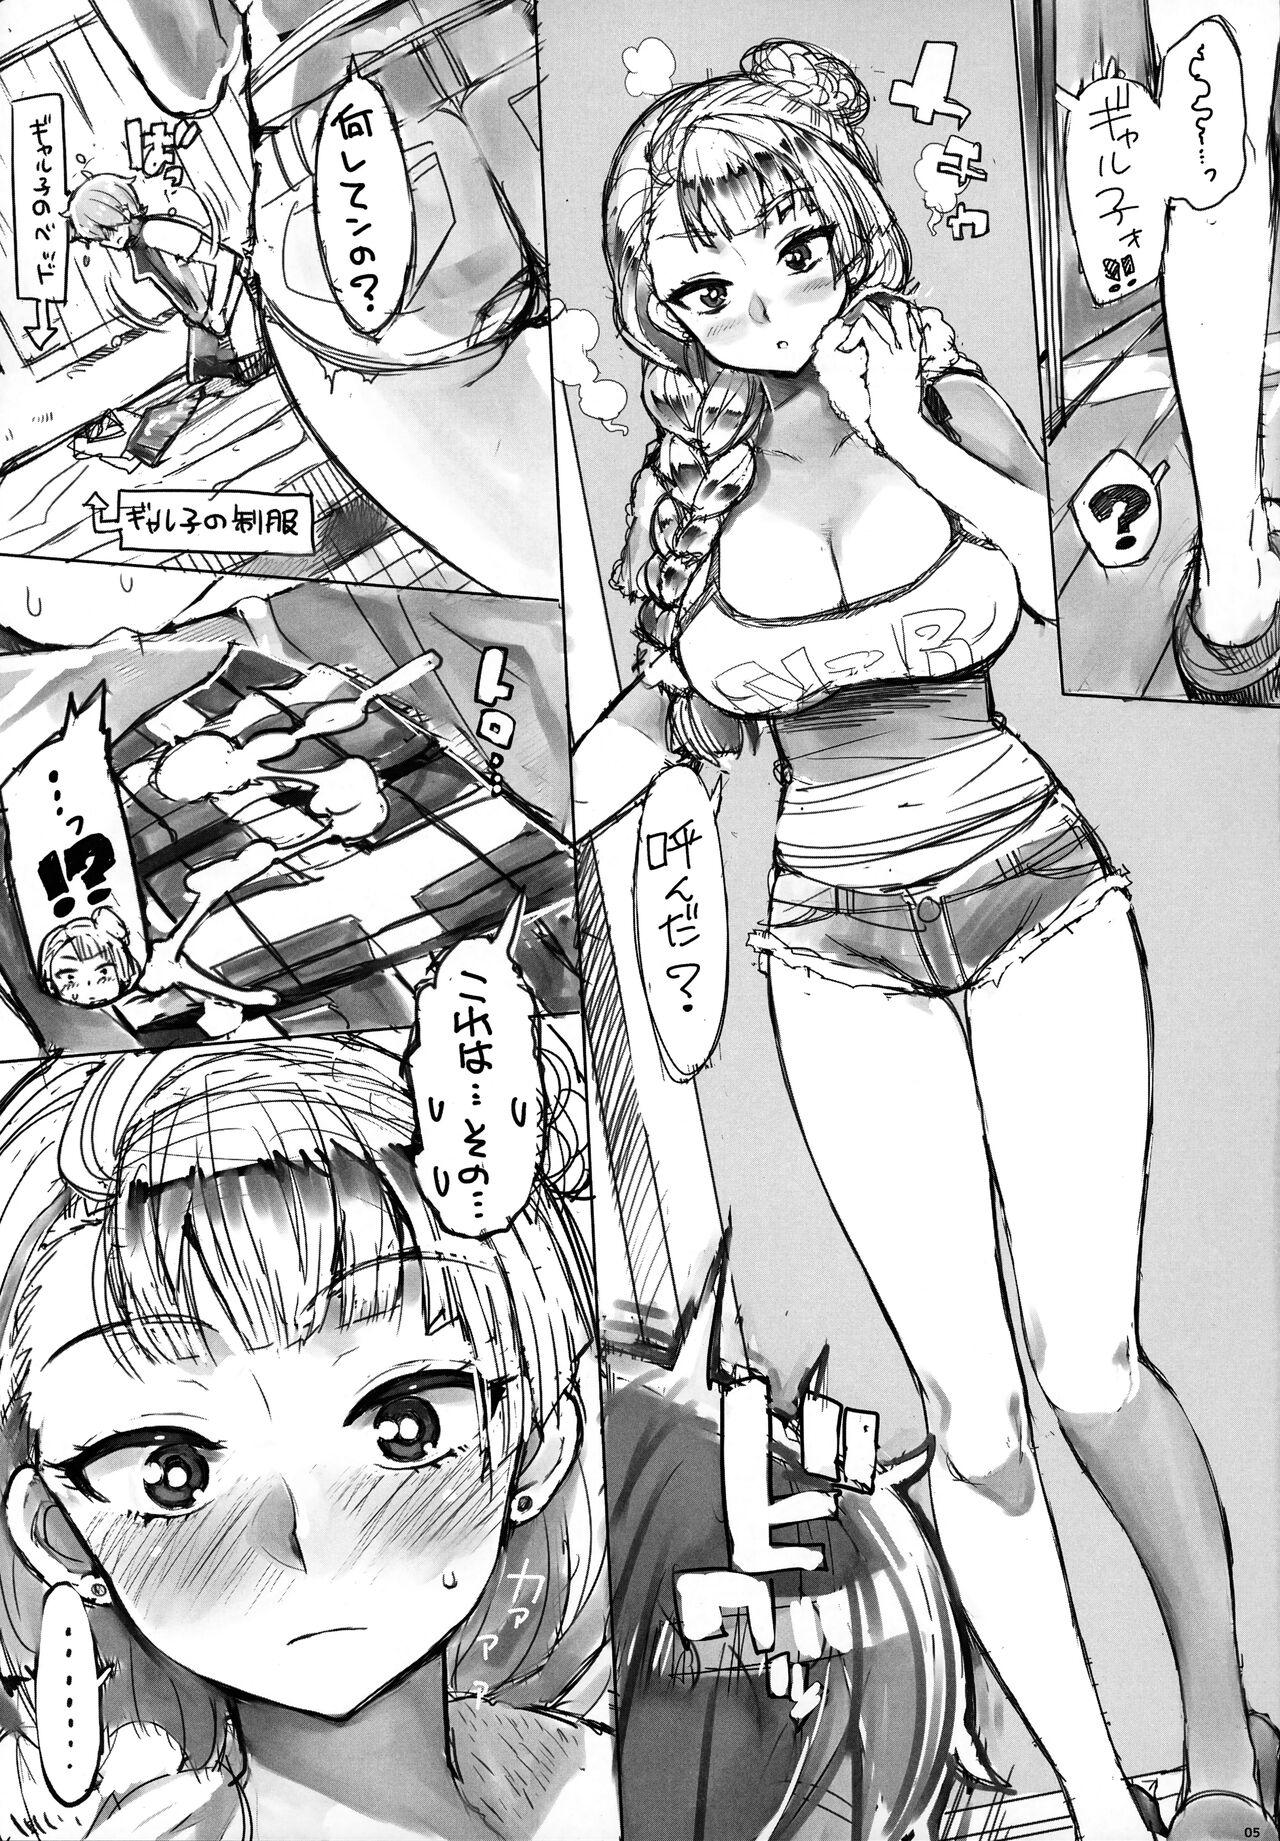 Big Ass Galko bon arimasu. - Oshiete galko-chan Gang - Page 4